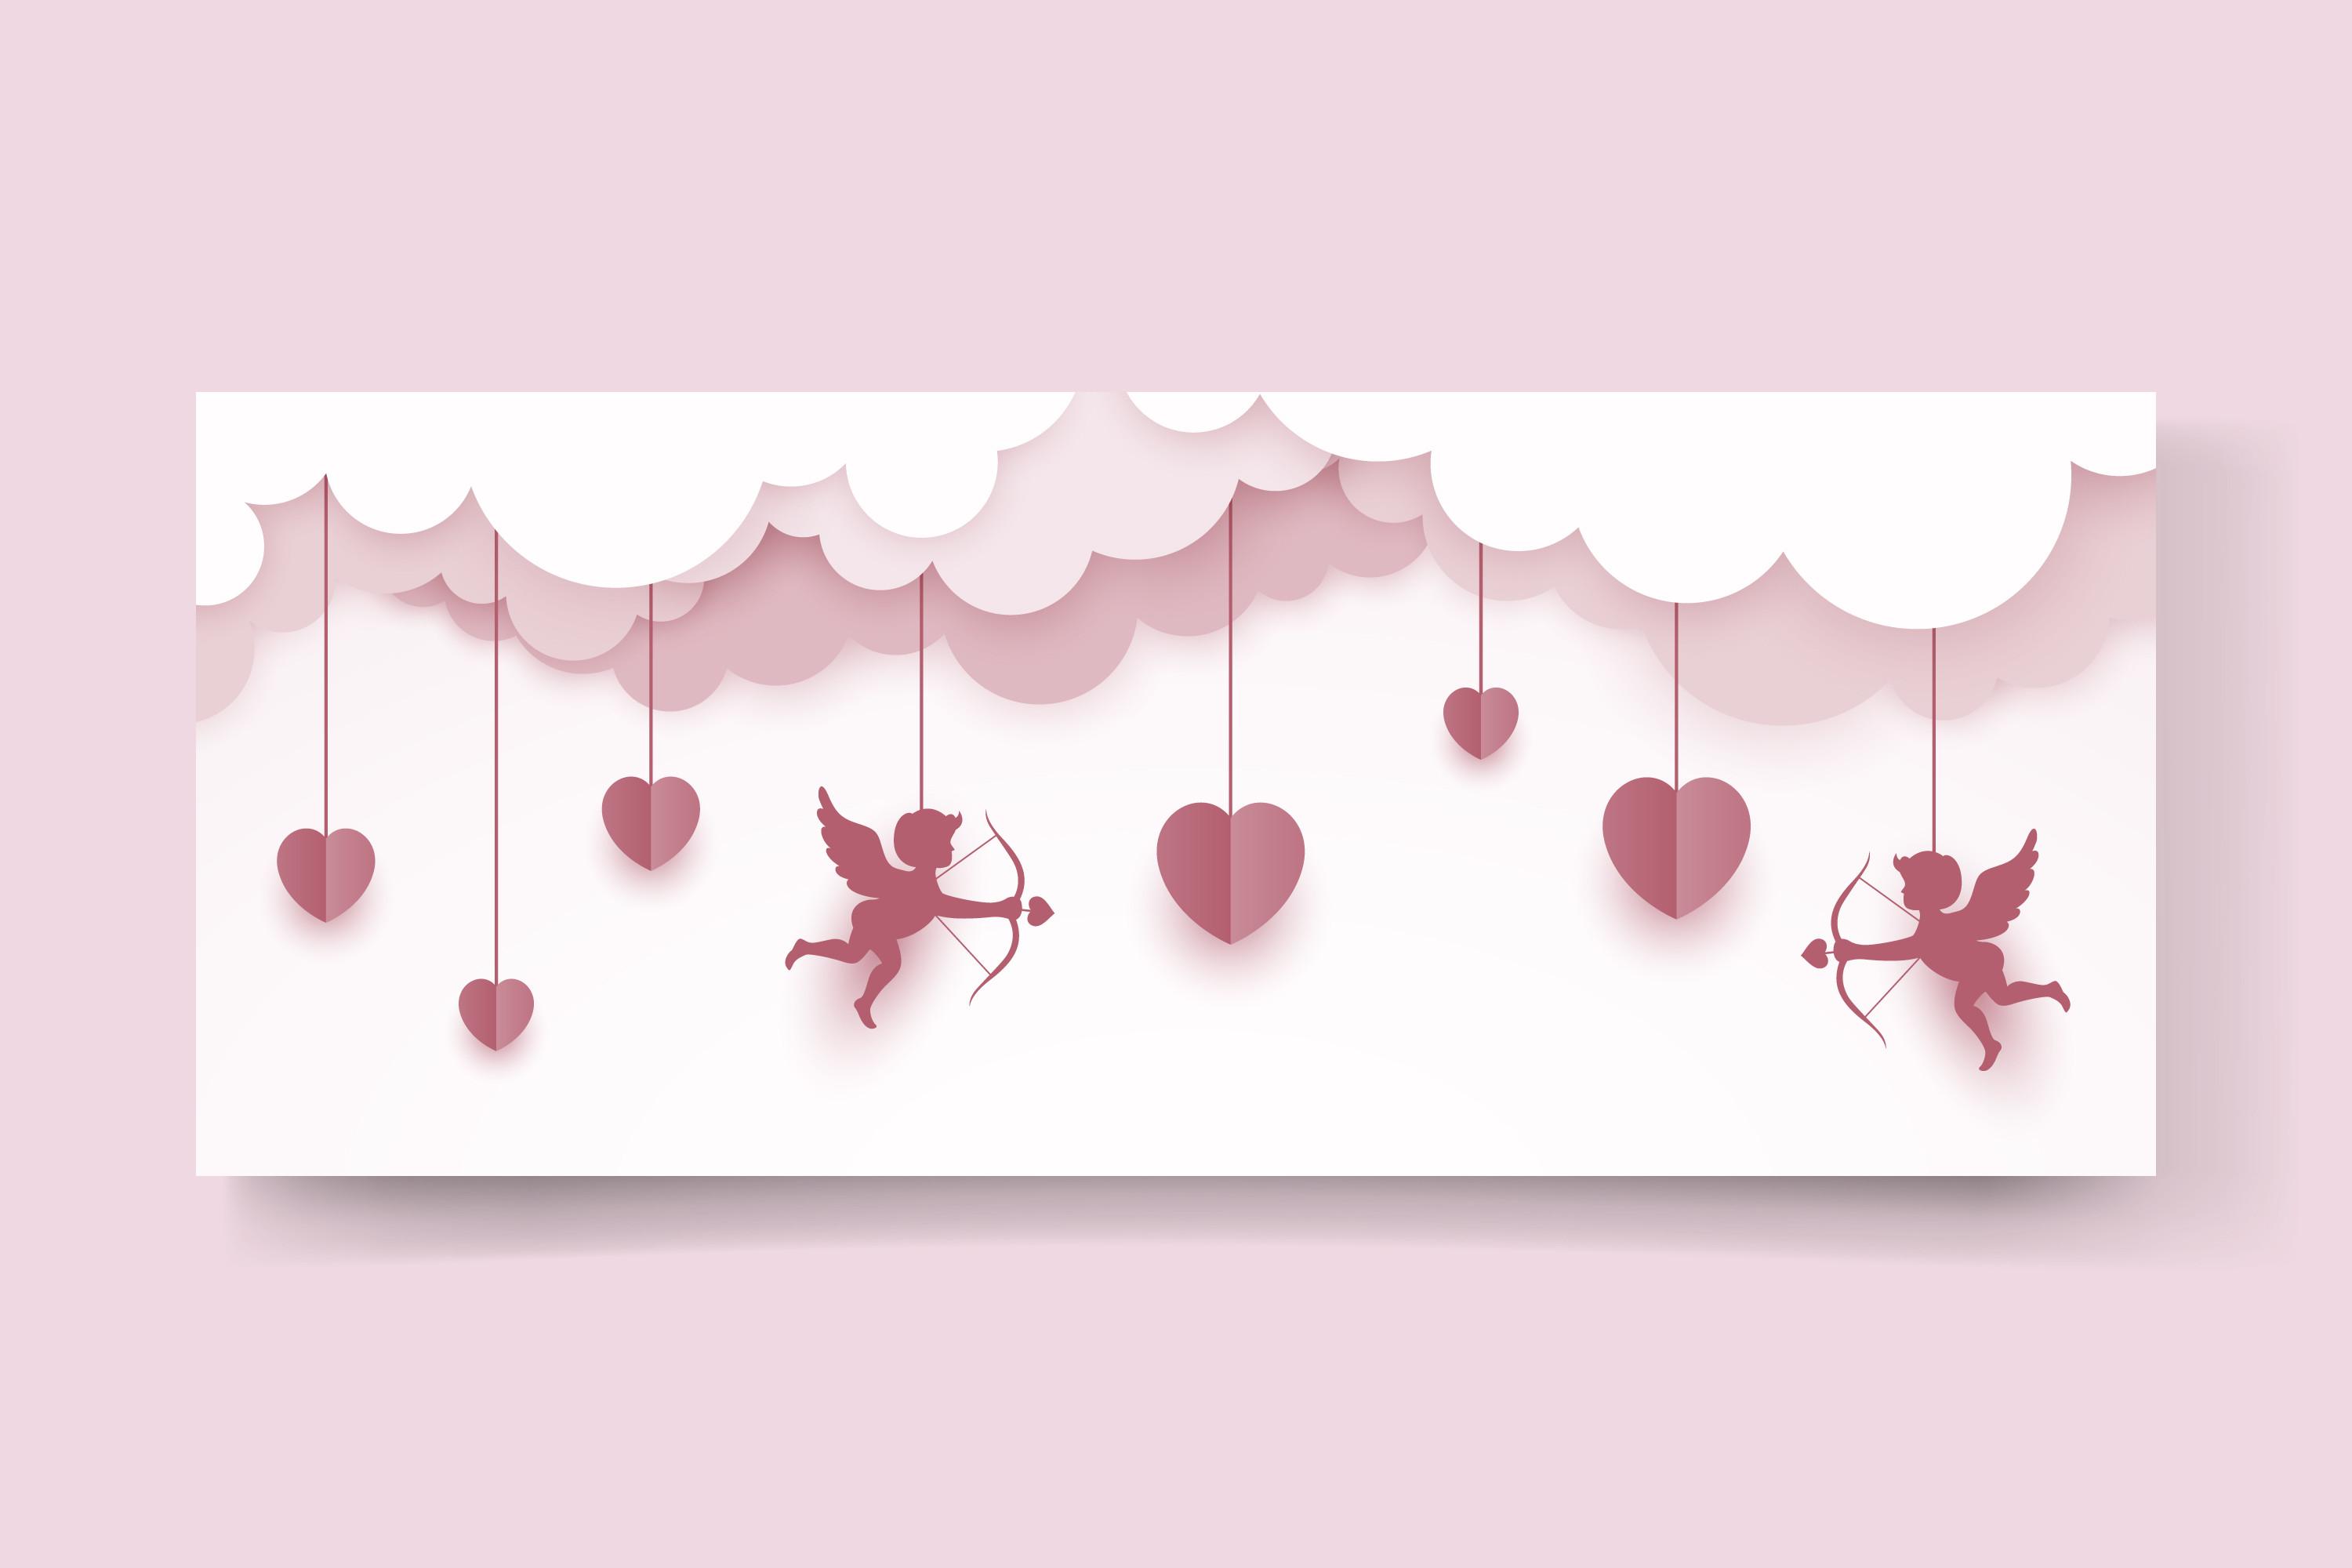 Happy Valentine's Day Banner